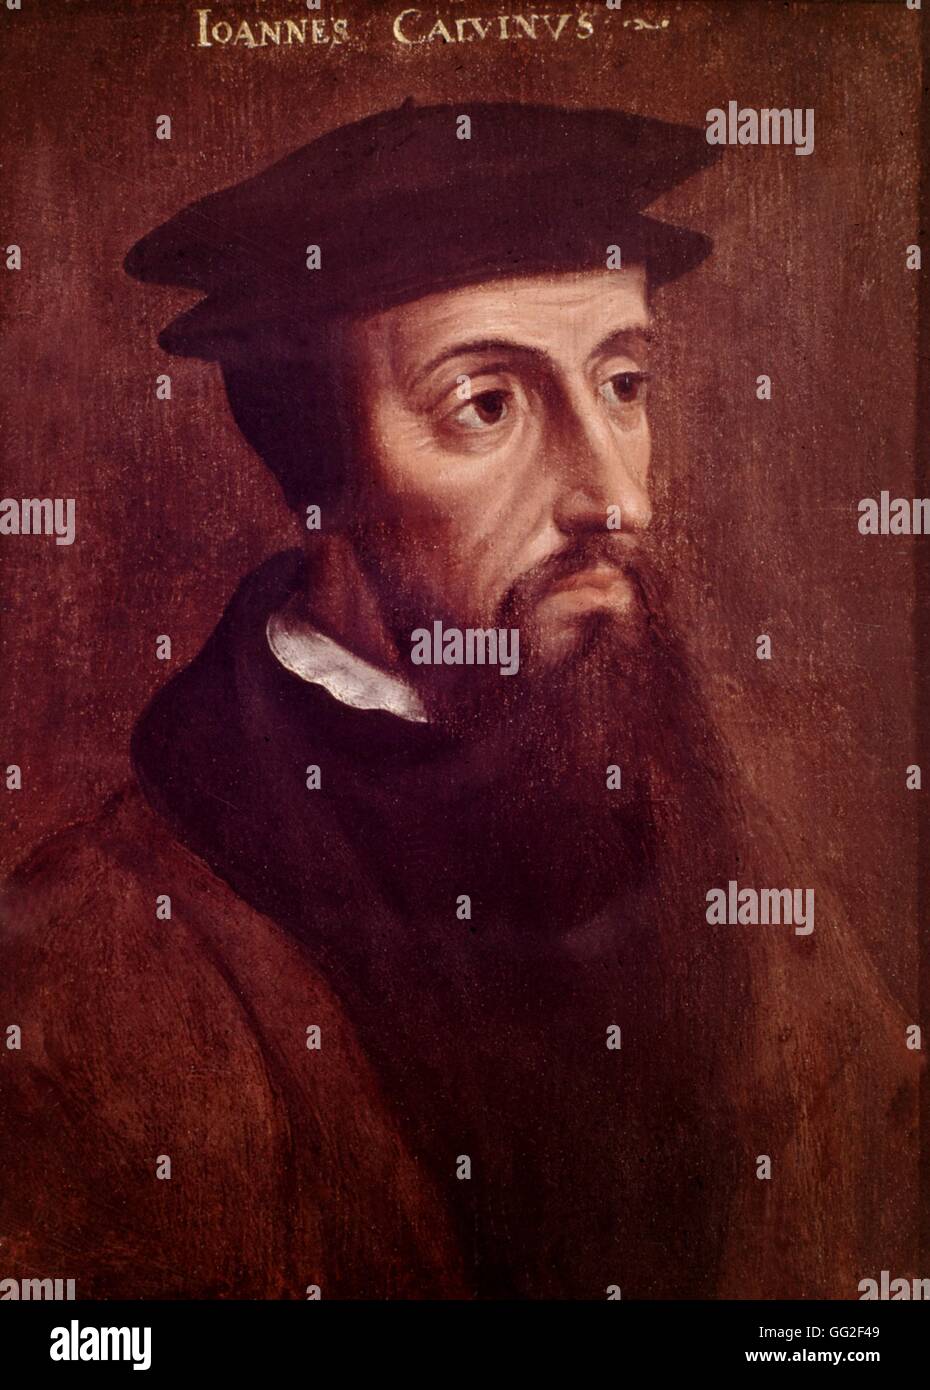 Portrait de Calvin connu sous le portrait de Rotterdam Rotterdam Boynana anonyme du 16e siècle Banque D'Images